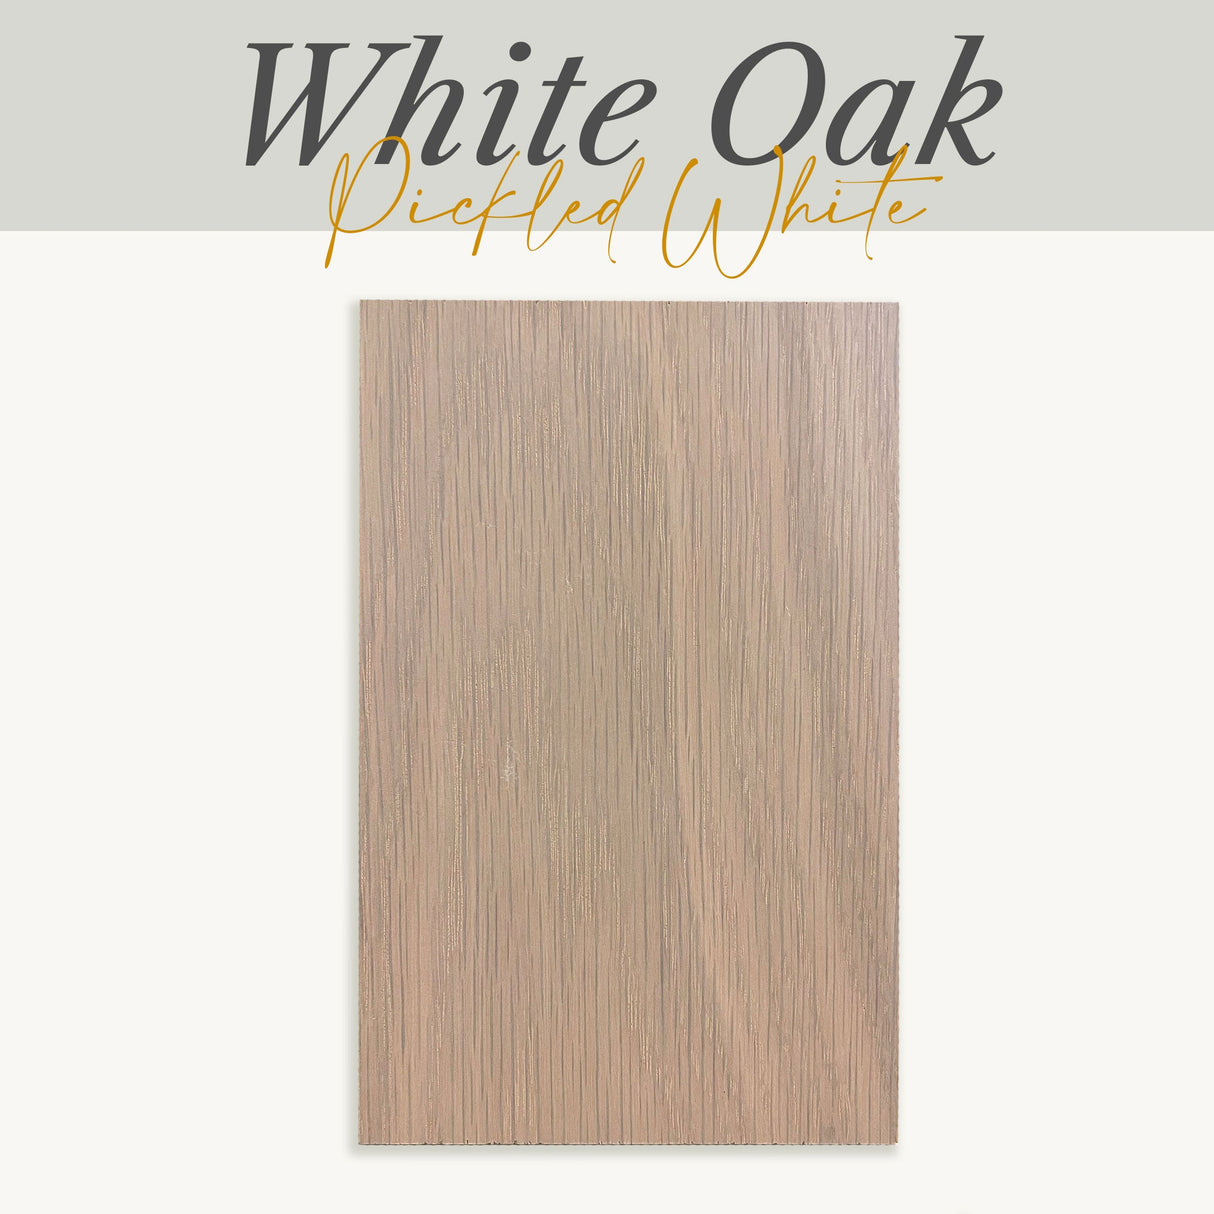 White Oak-Pickled White